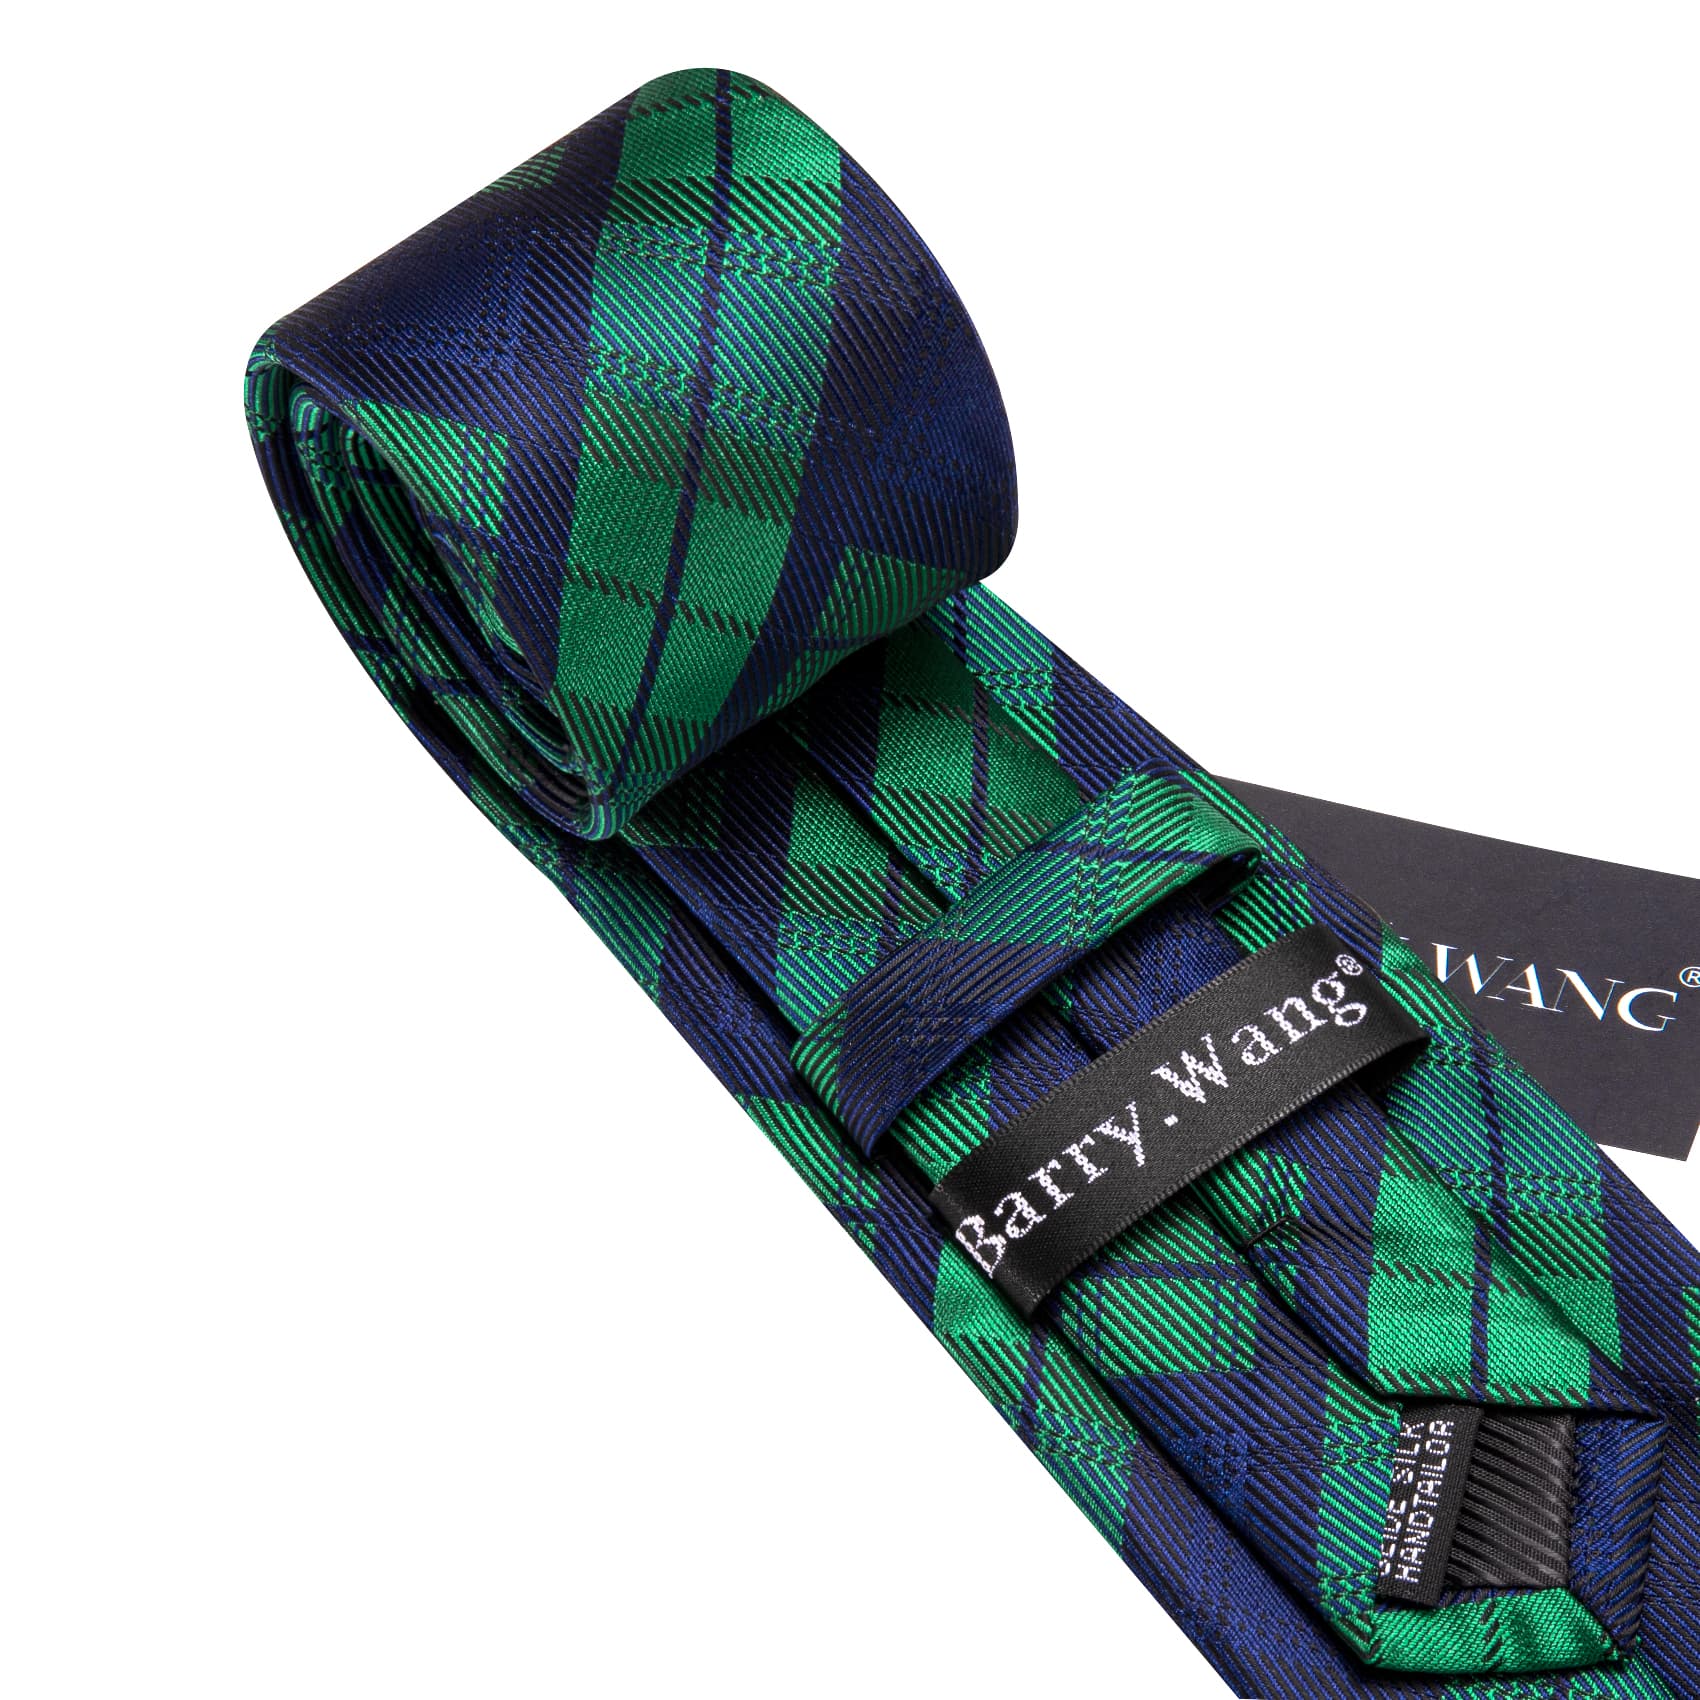 Tie Black Blue Green Checkered Necktie Hanky Cufflinks Set